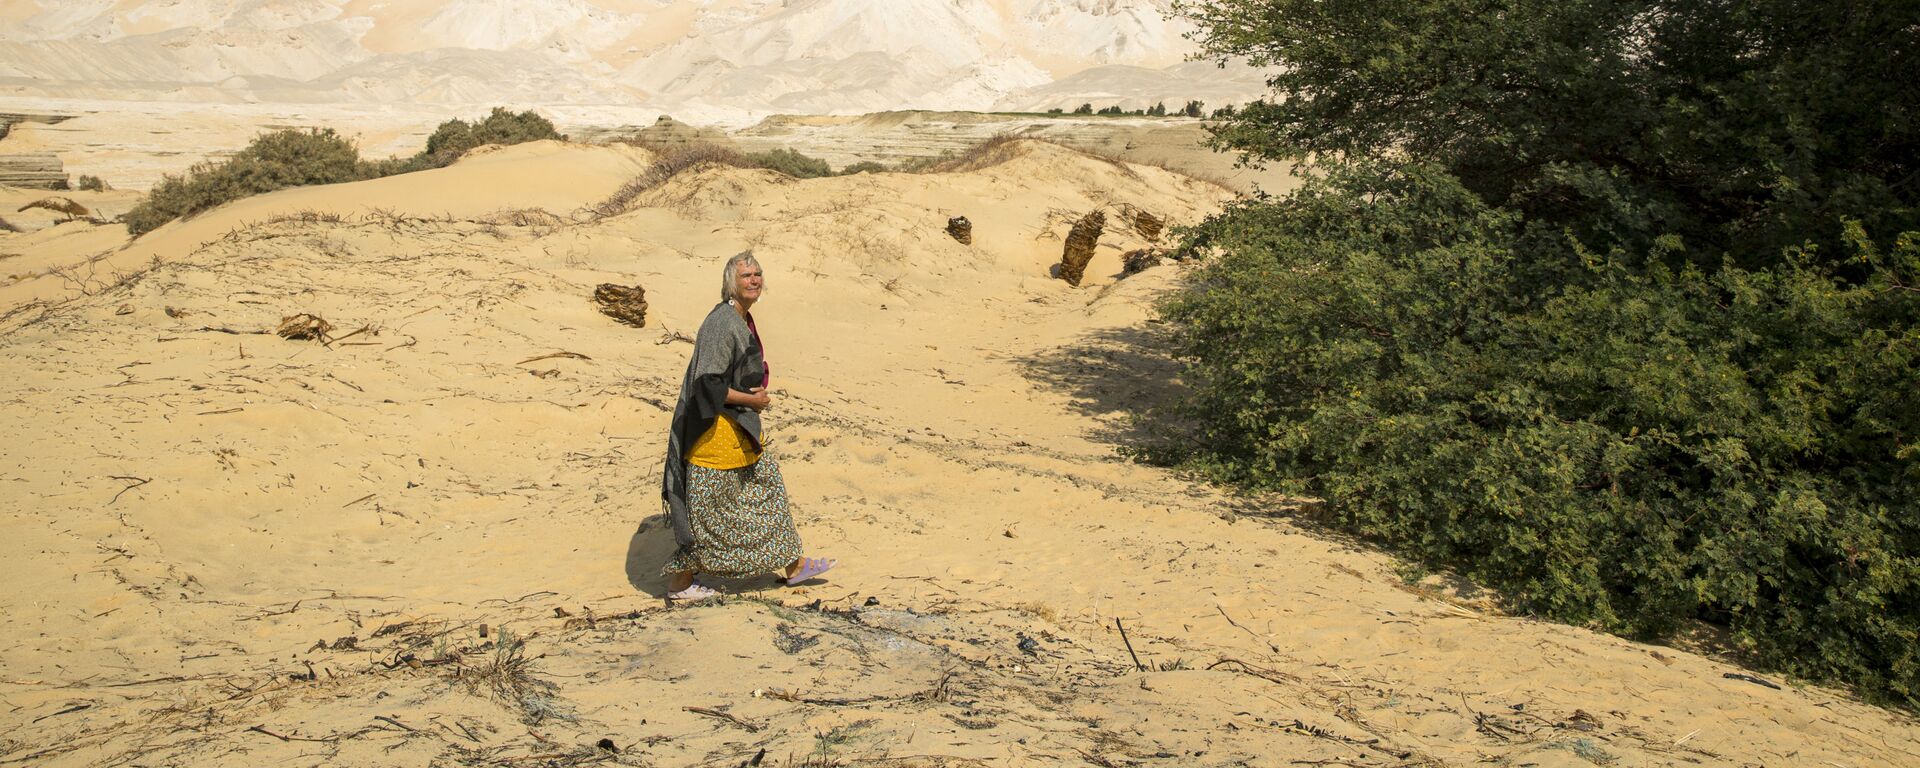 72-летняя немка Фридель Браун во дворе своего дома в Бир-эль-Джабале недалеко от оазиса в пустыне Дахла, Египет - Sputnik Армения, 1920, 17.02.2021